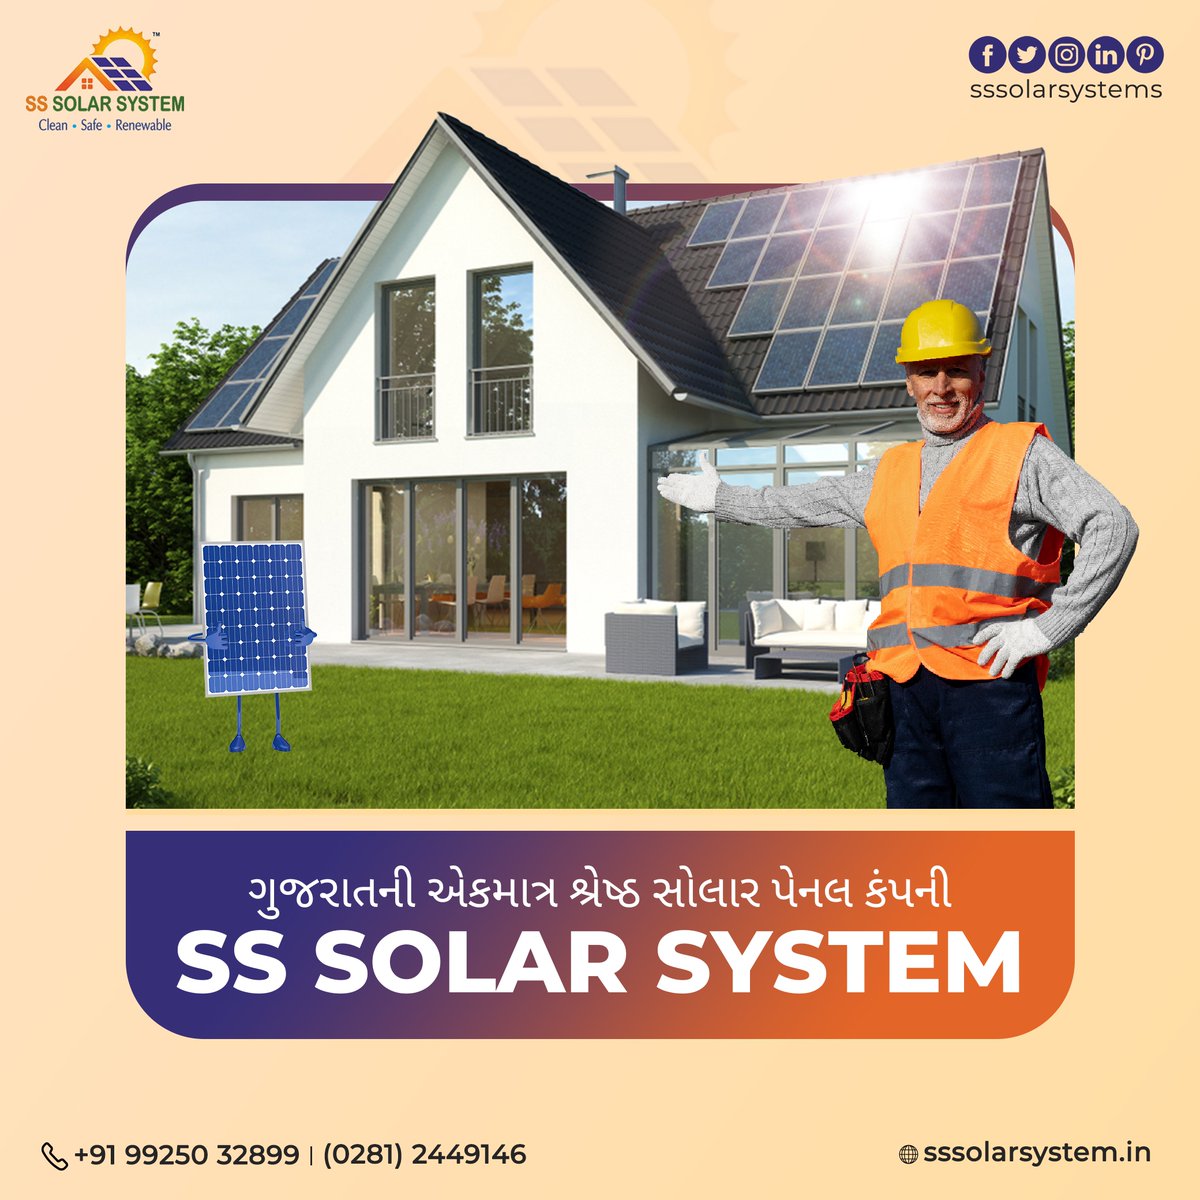 ગુજરાતની એકમાત્ર શ્રેષ્ઠ સોલાર પેનલ કંપની - 𝗦𝗦 𝗦𝗼𝗹𝗮𝗿 𝗦𝘆𝘀𝘁𝗲𝗺

💻 sssolarsystem.in
☎️ 0281 - 2449146
📞 99250 32899

#SolarRoof #SolarEnergy #StormSafety #Solar #SolarPanels #SolarPower #SolarEnergySystem #RenewableEnergy #SSSolarSystem #Rajkot